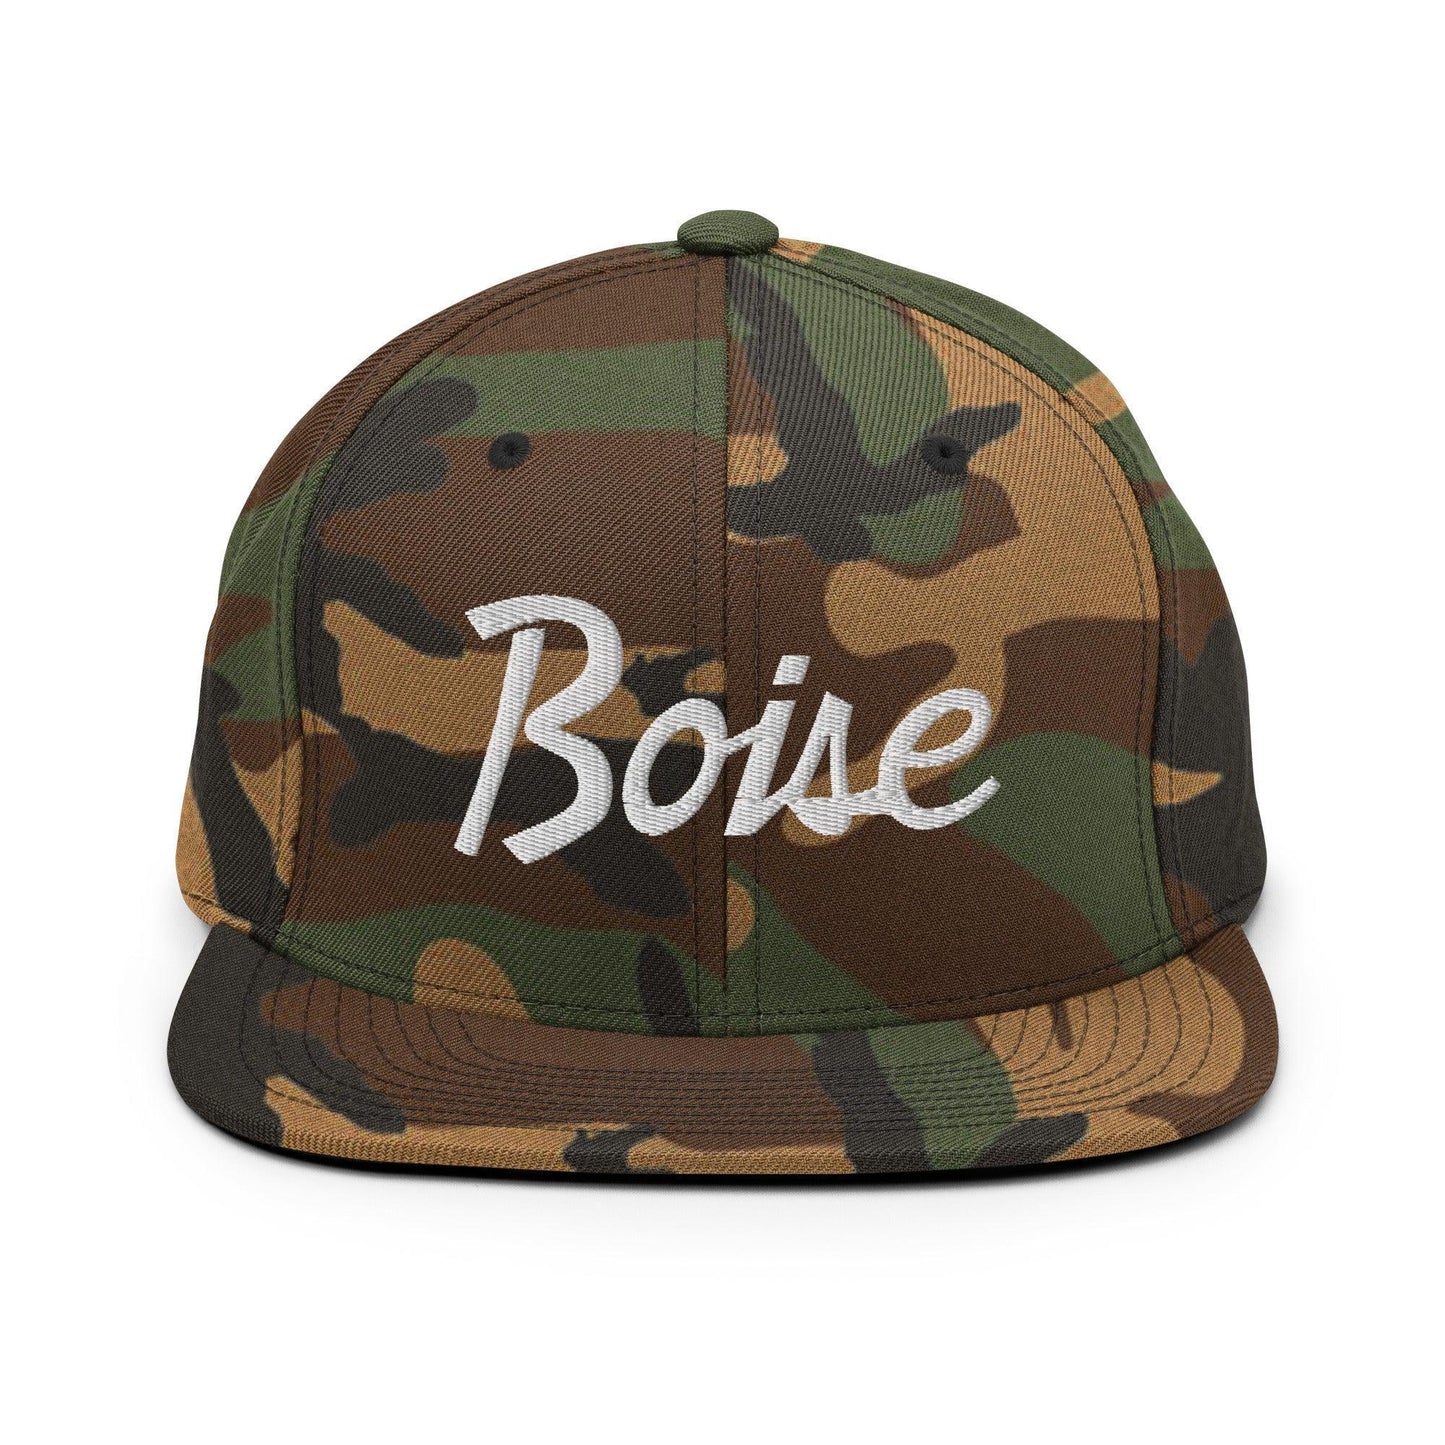 Boise Script Snapback Hat Green Camo